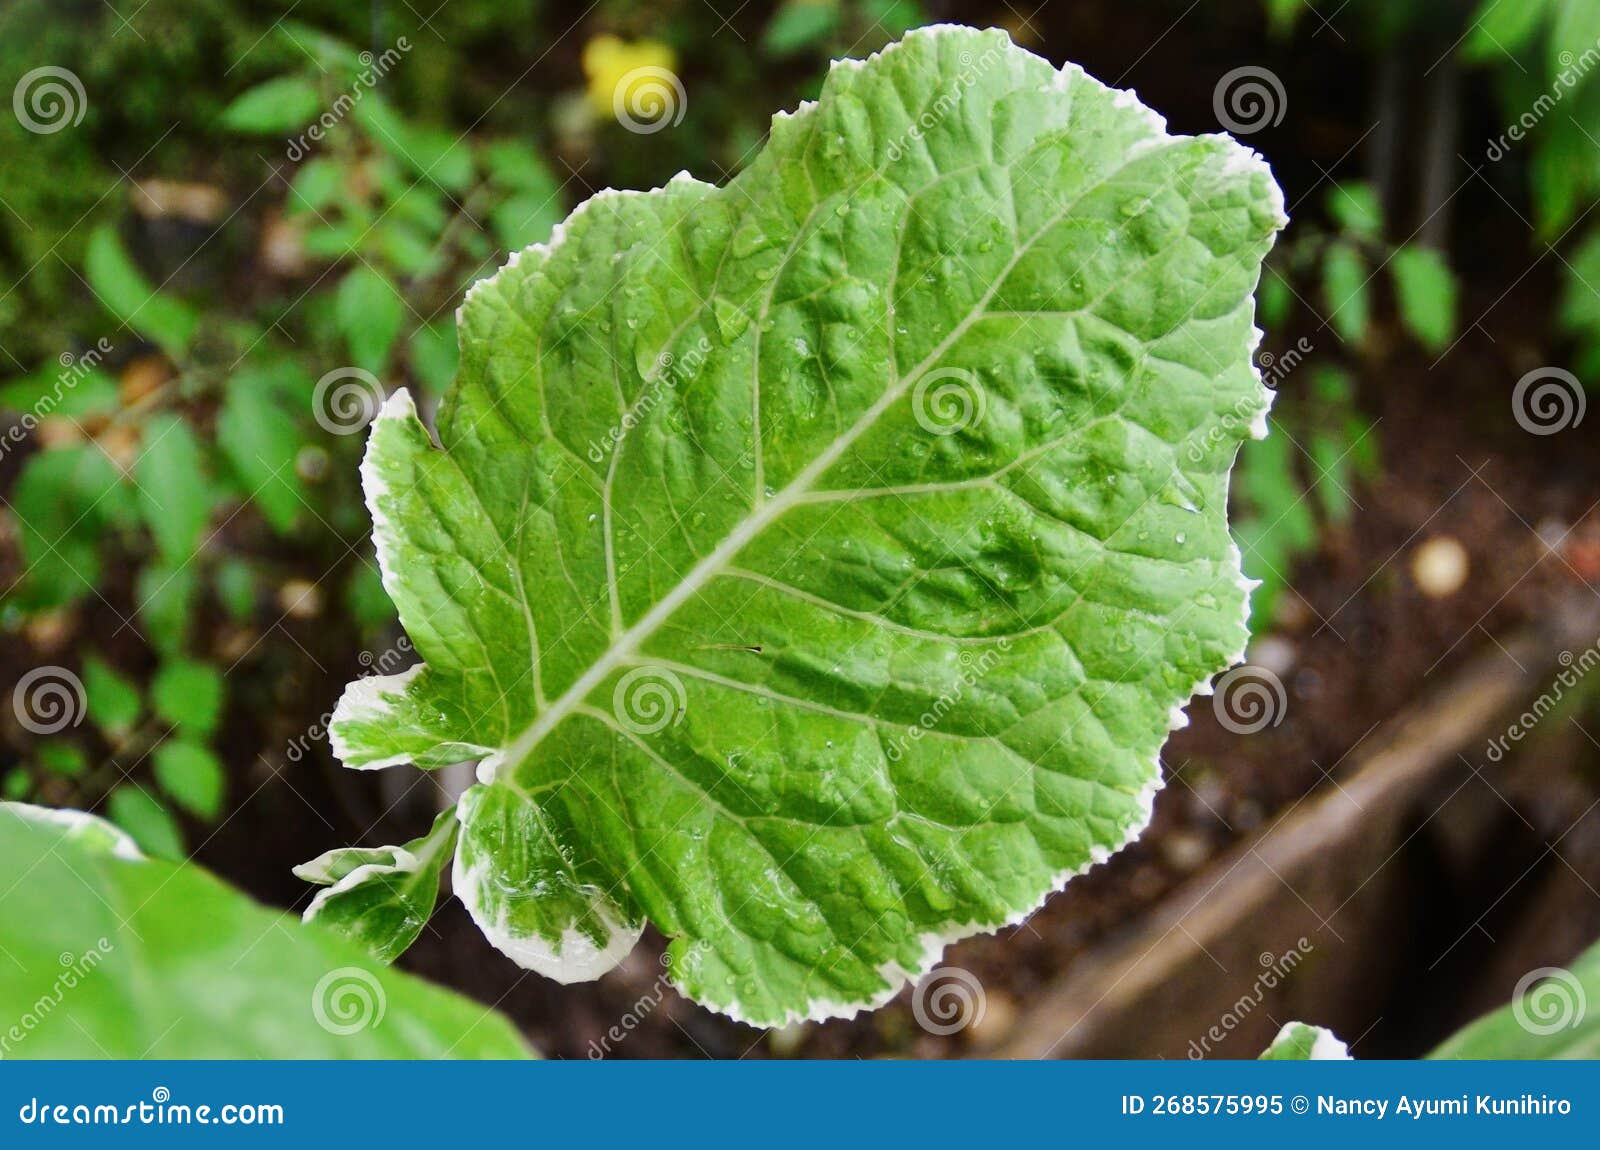 variegated cabbage leaf details